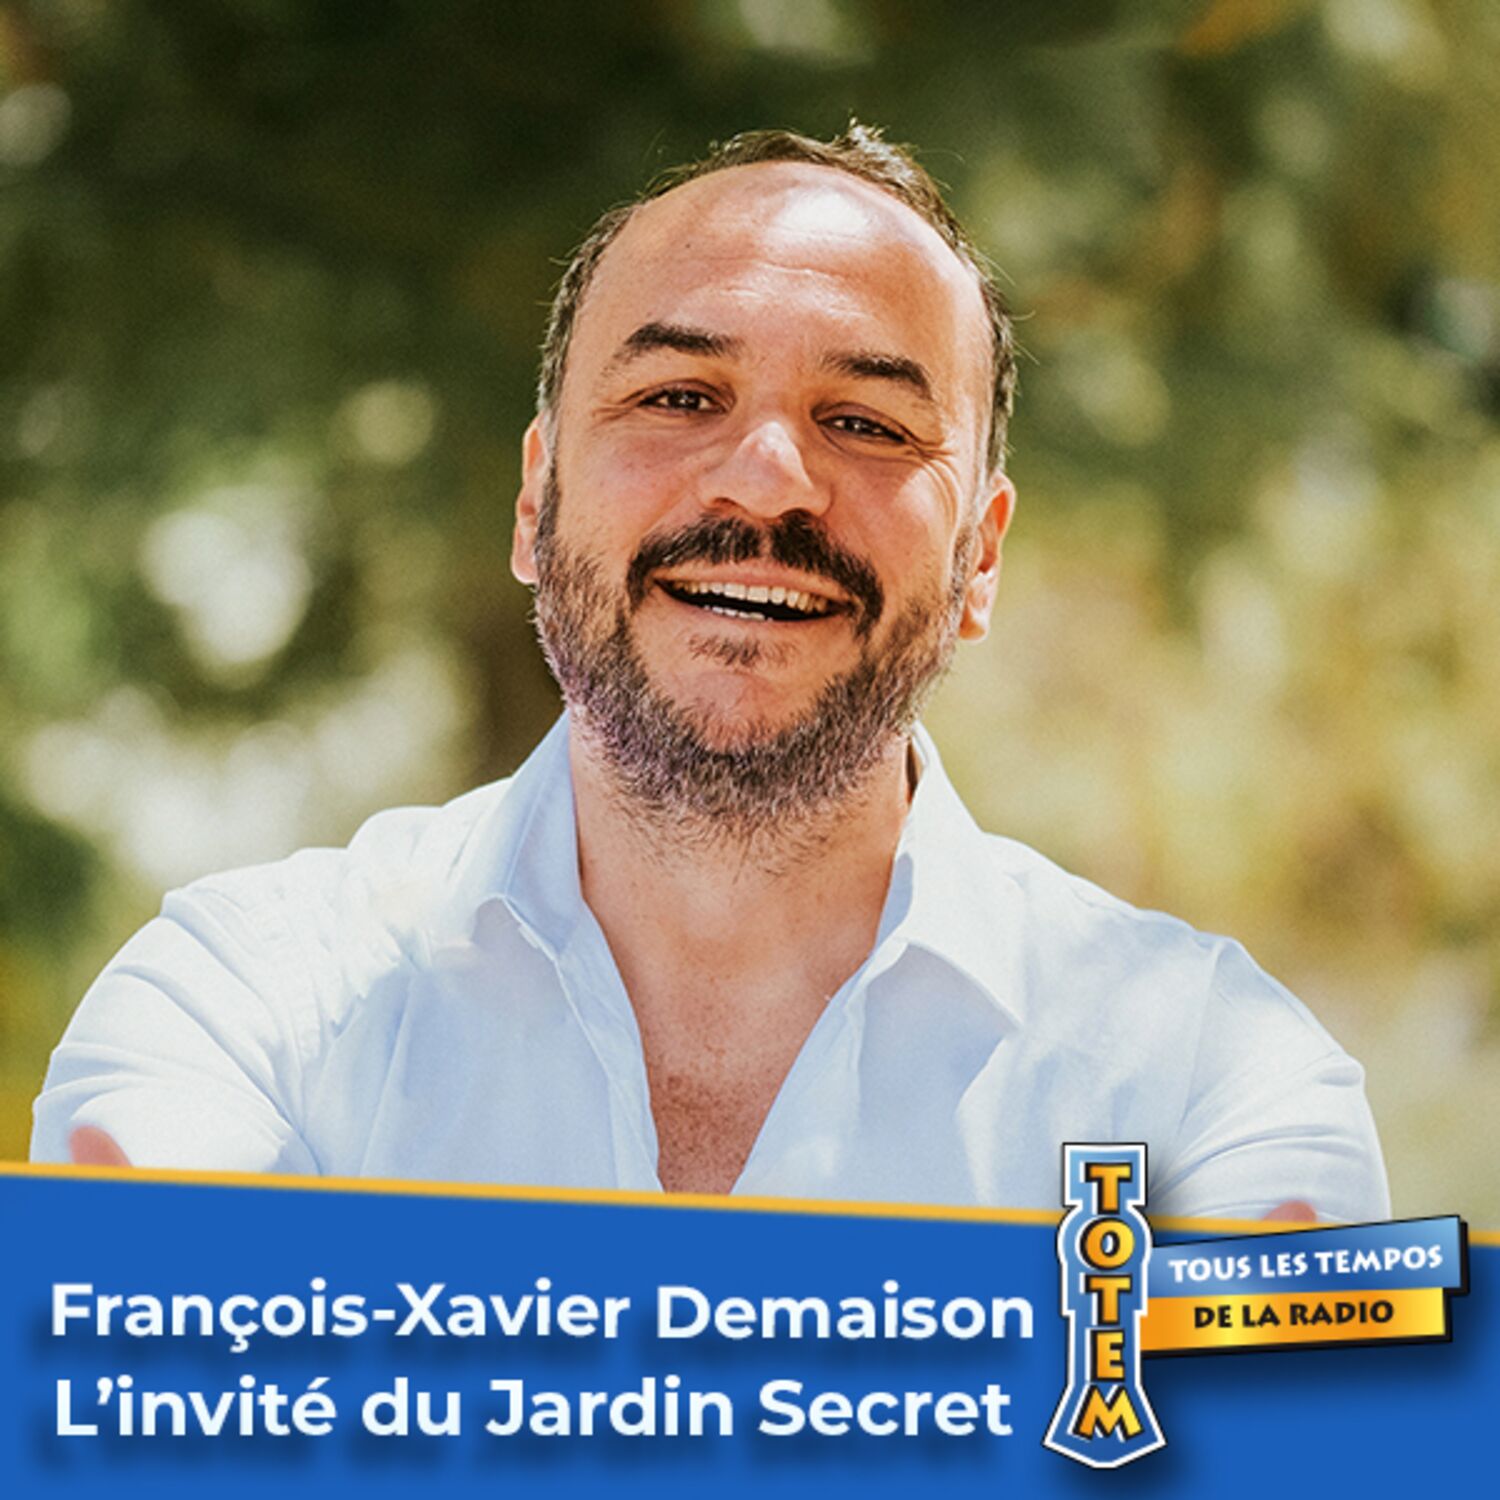 François-Xavier Demaison et sa passion pour le vin